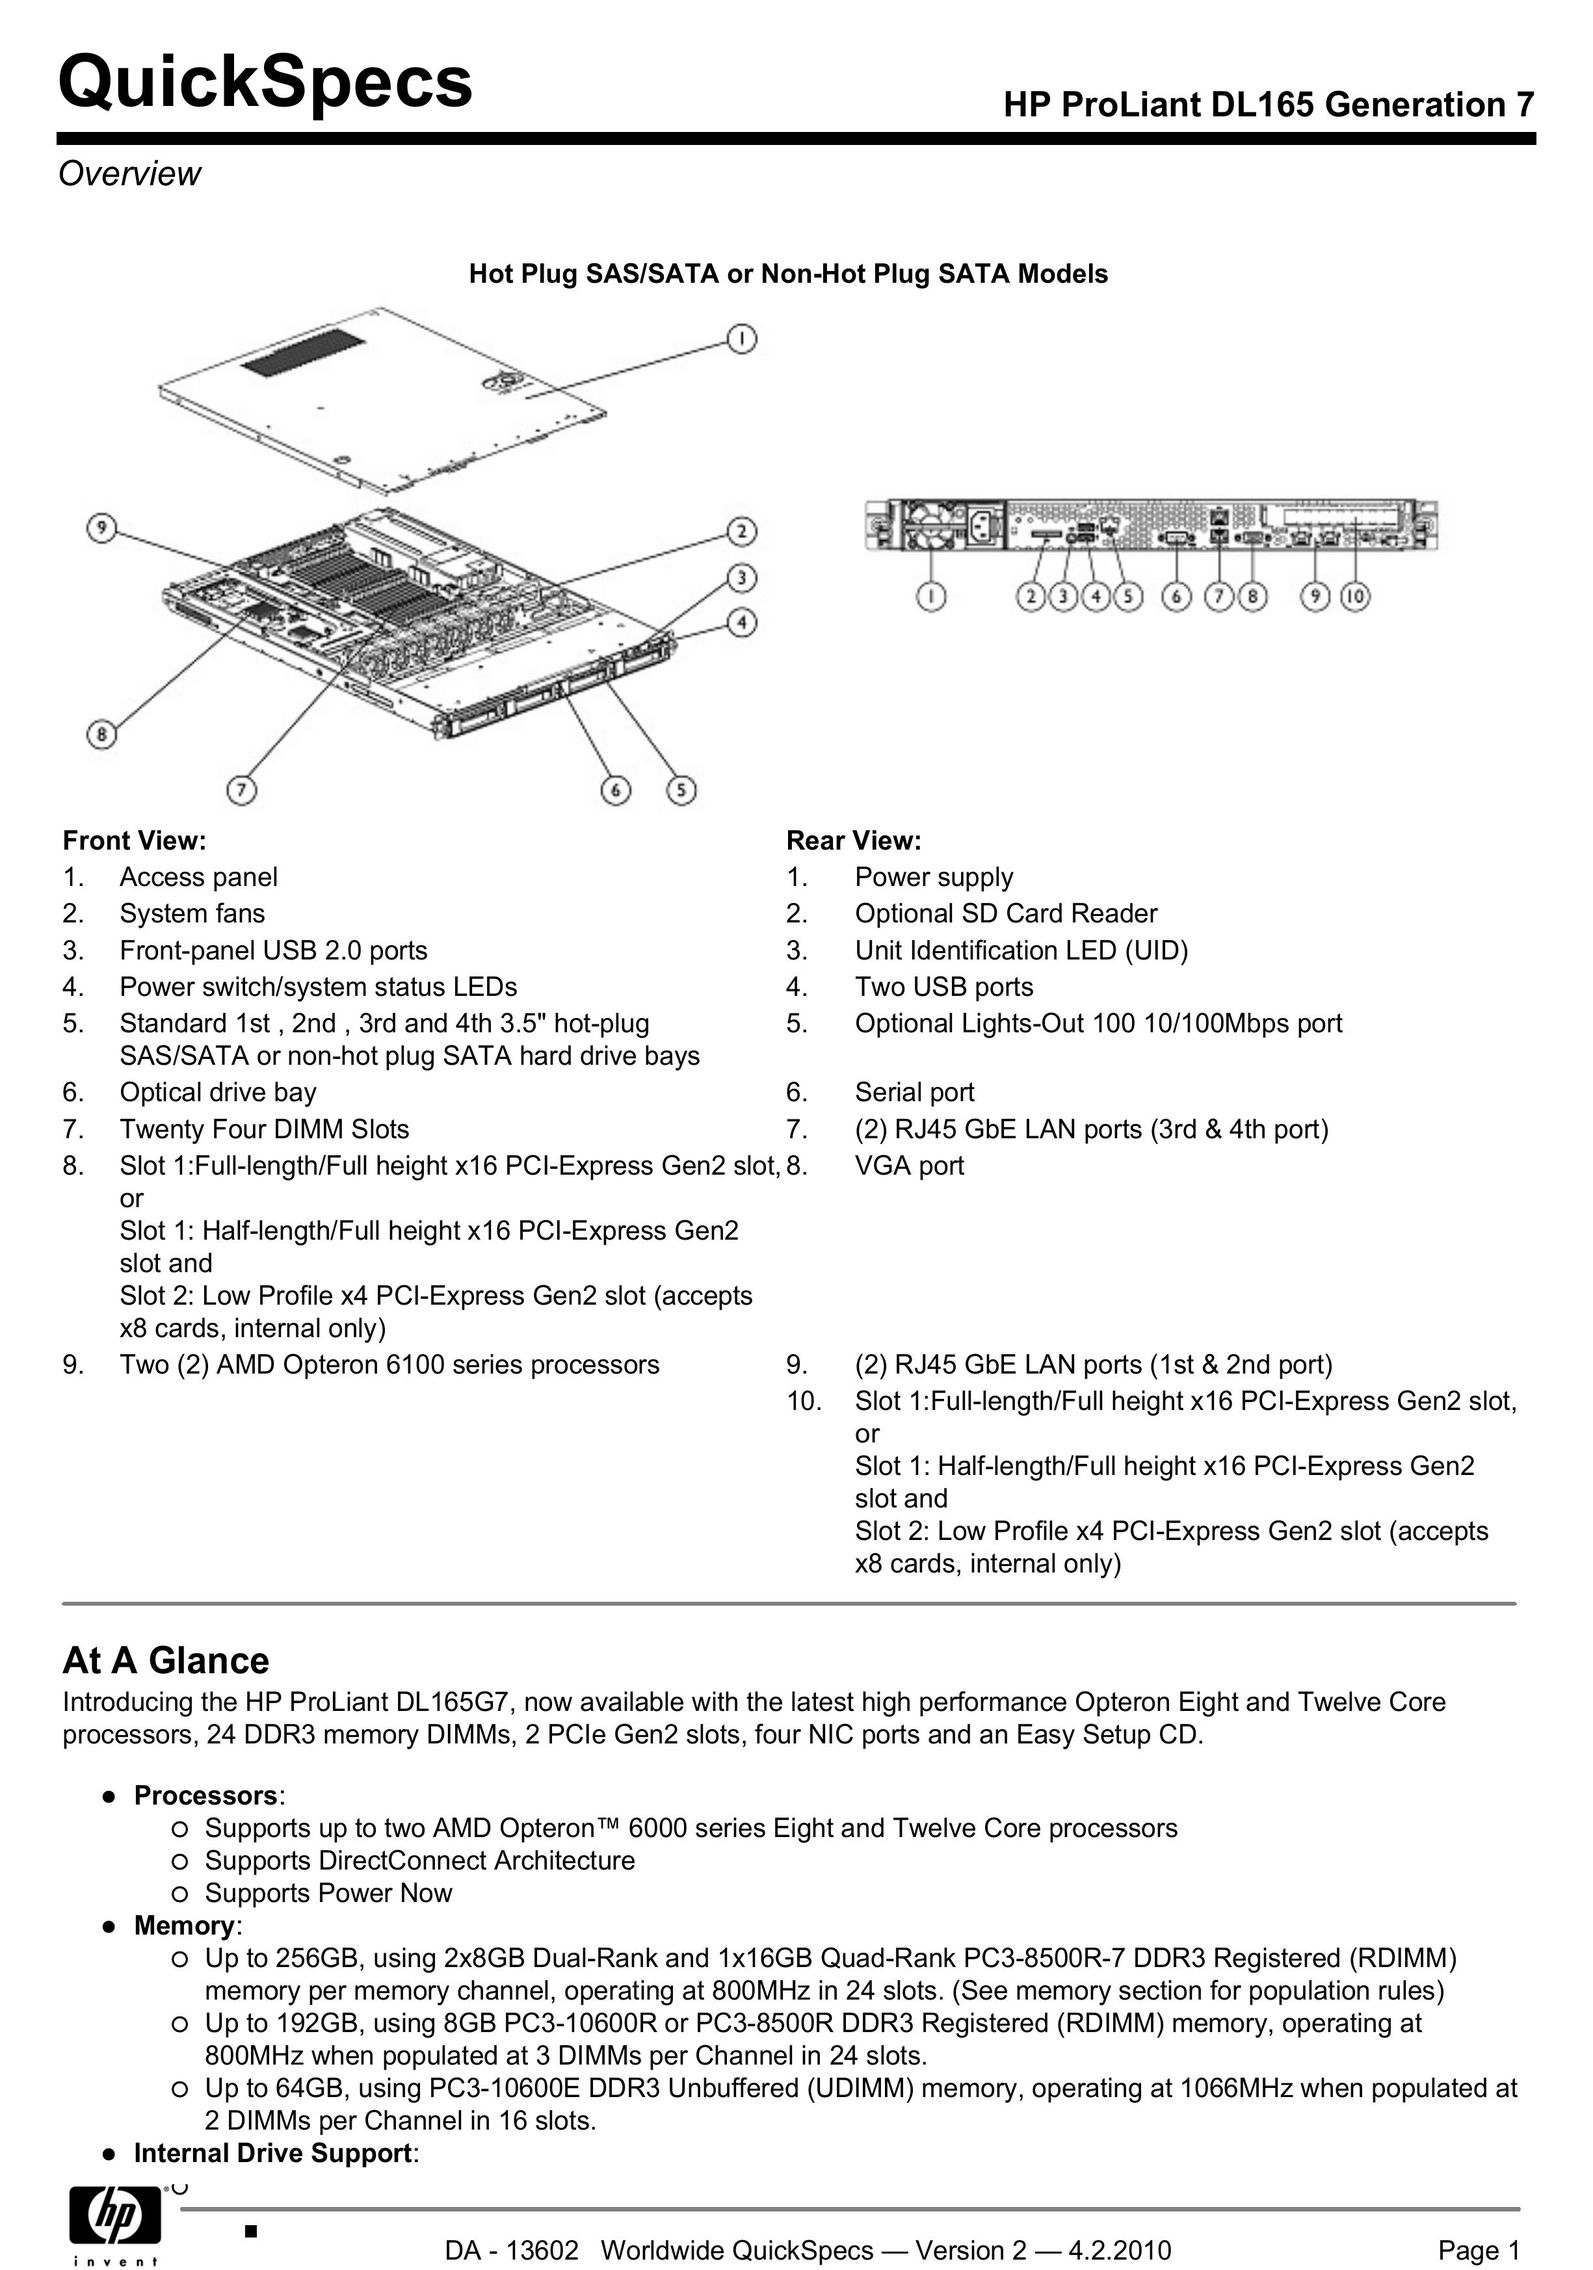 HP (Hewlett-Packard) DL165 Computer Hardware User Manual